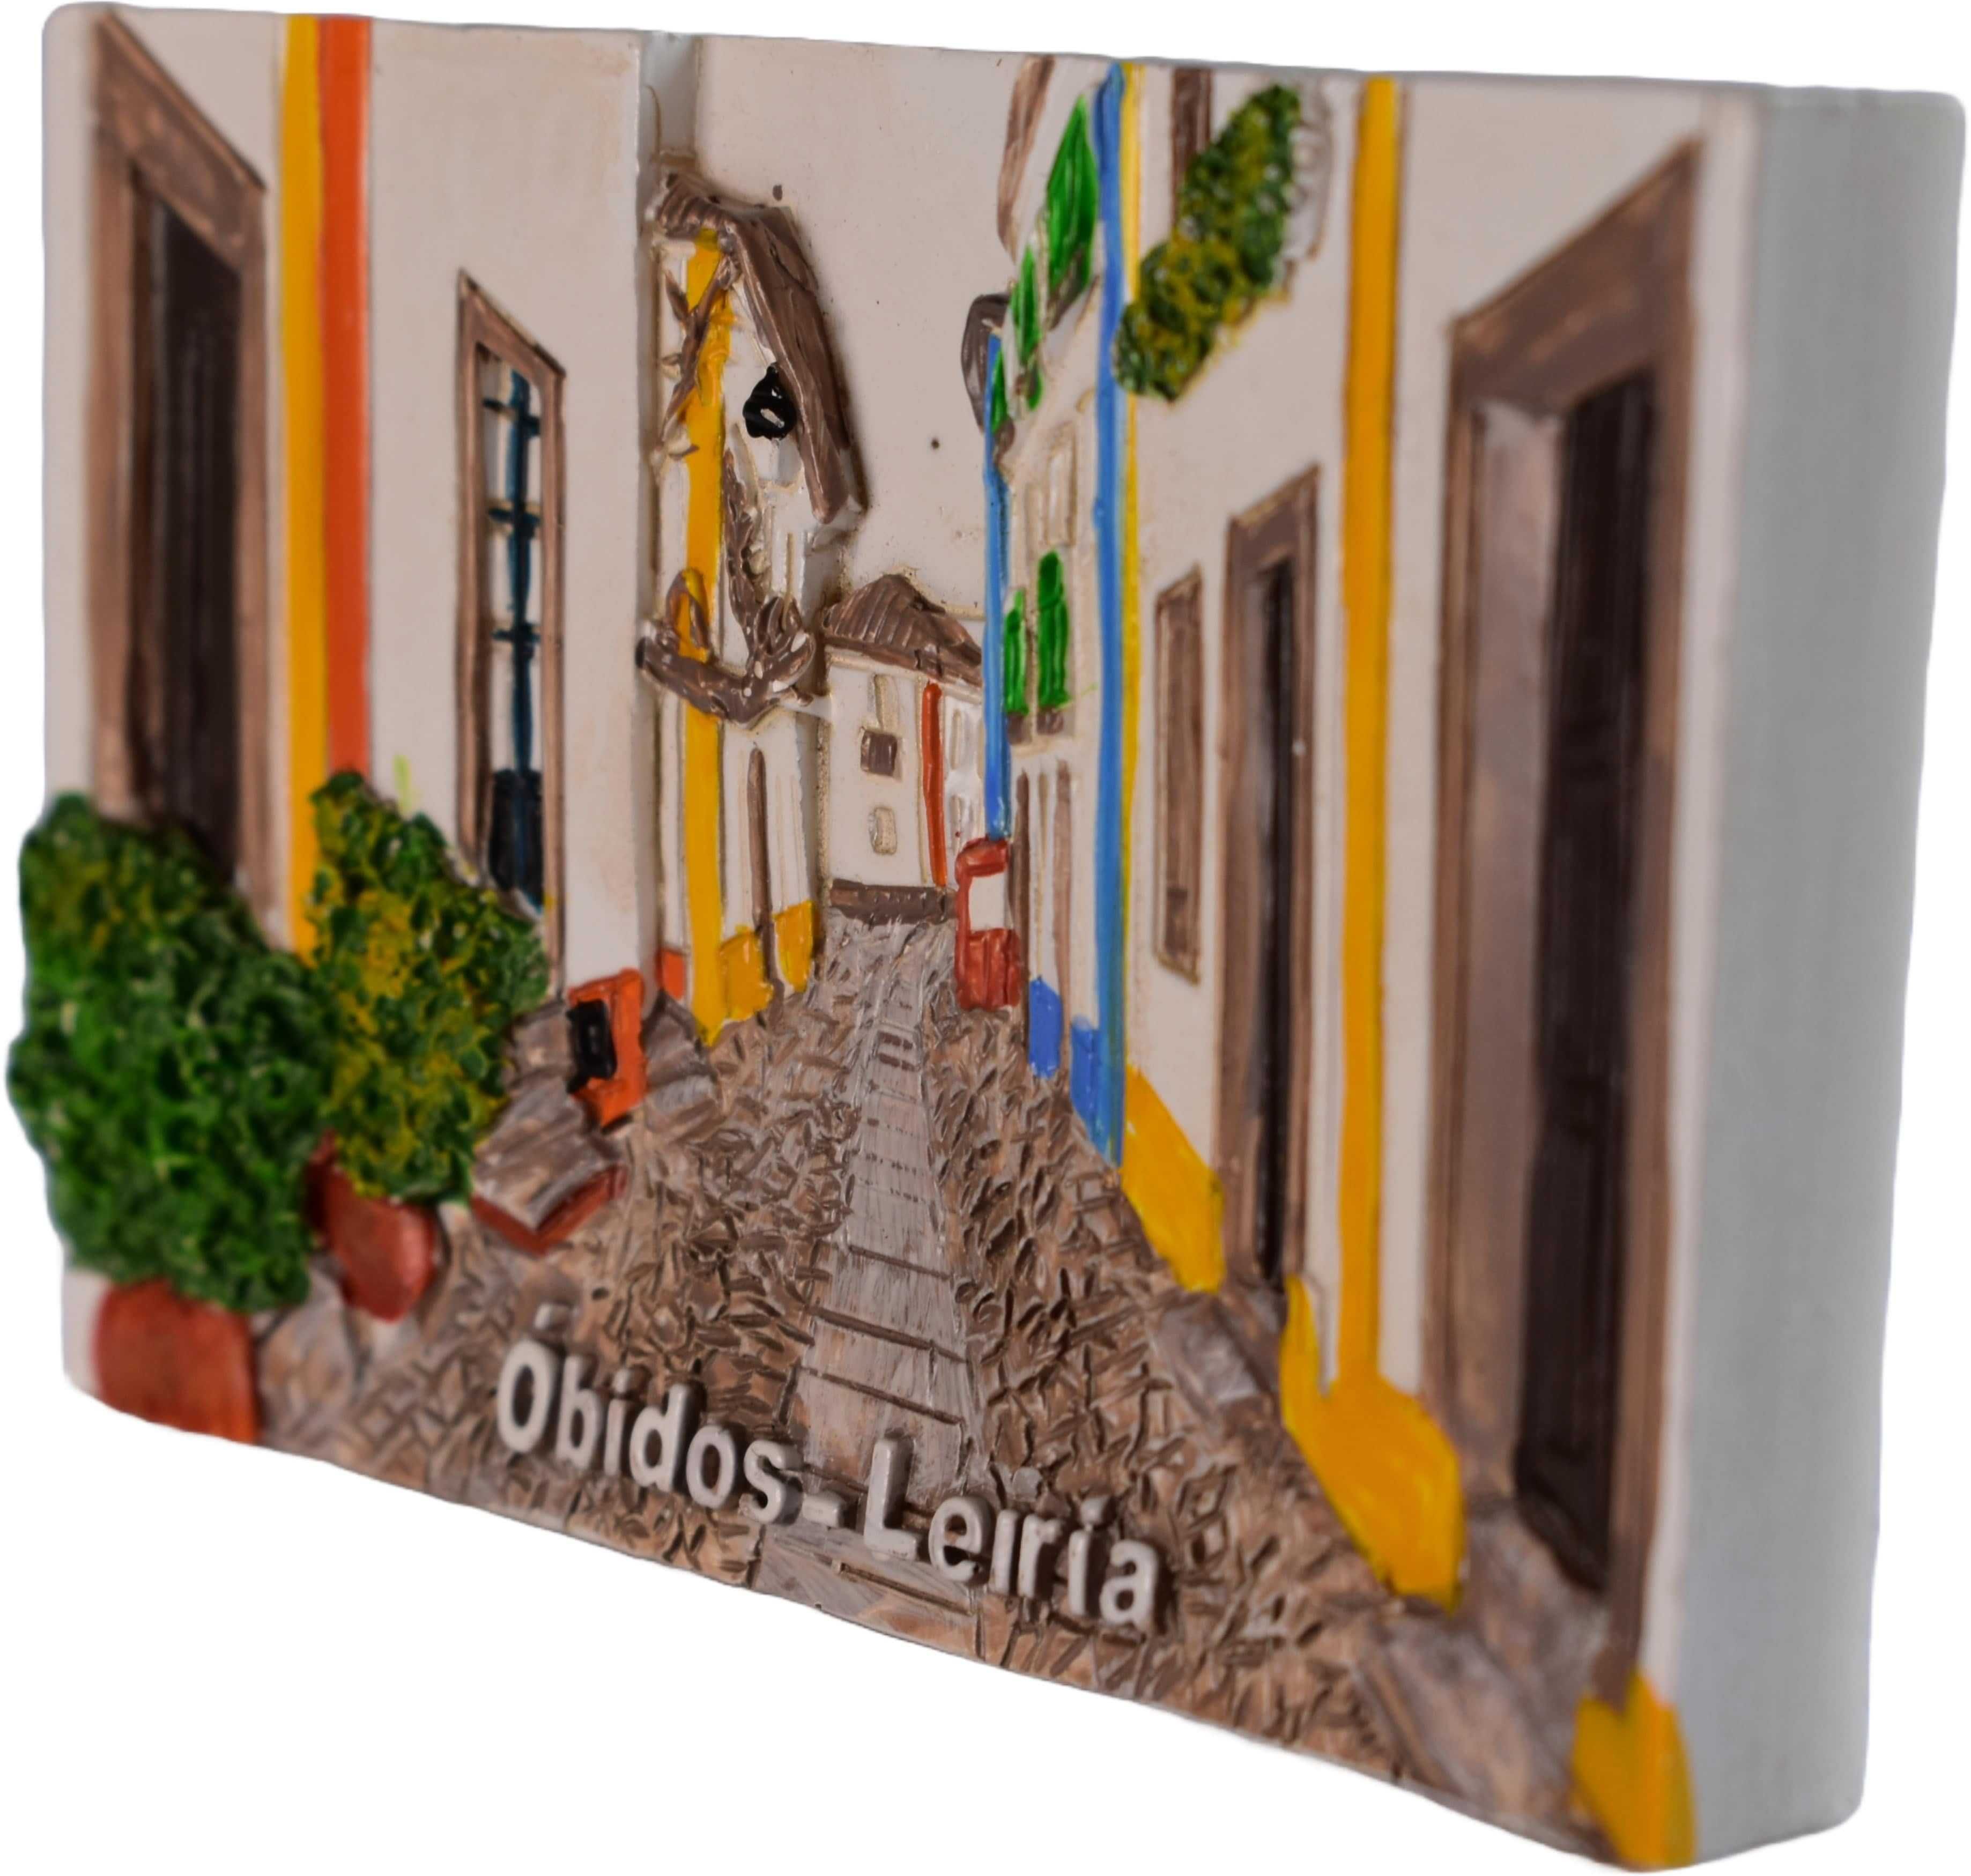 Vila de óbidos - Escultura íman de frigorífico